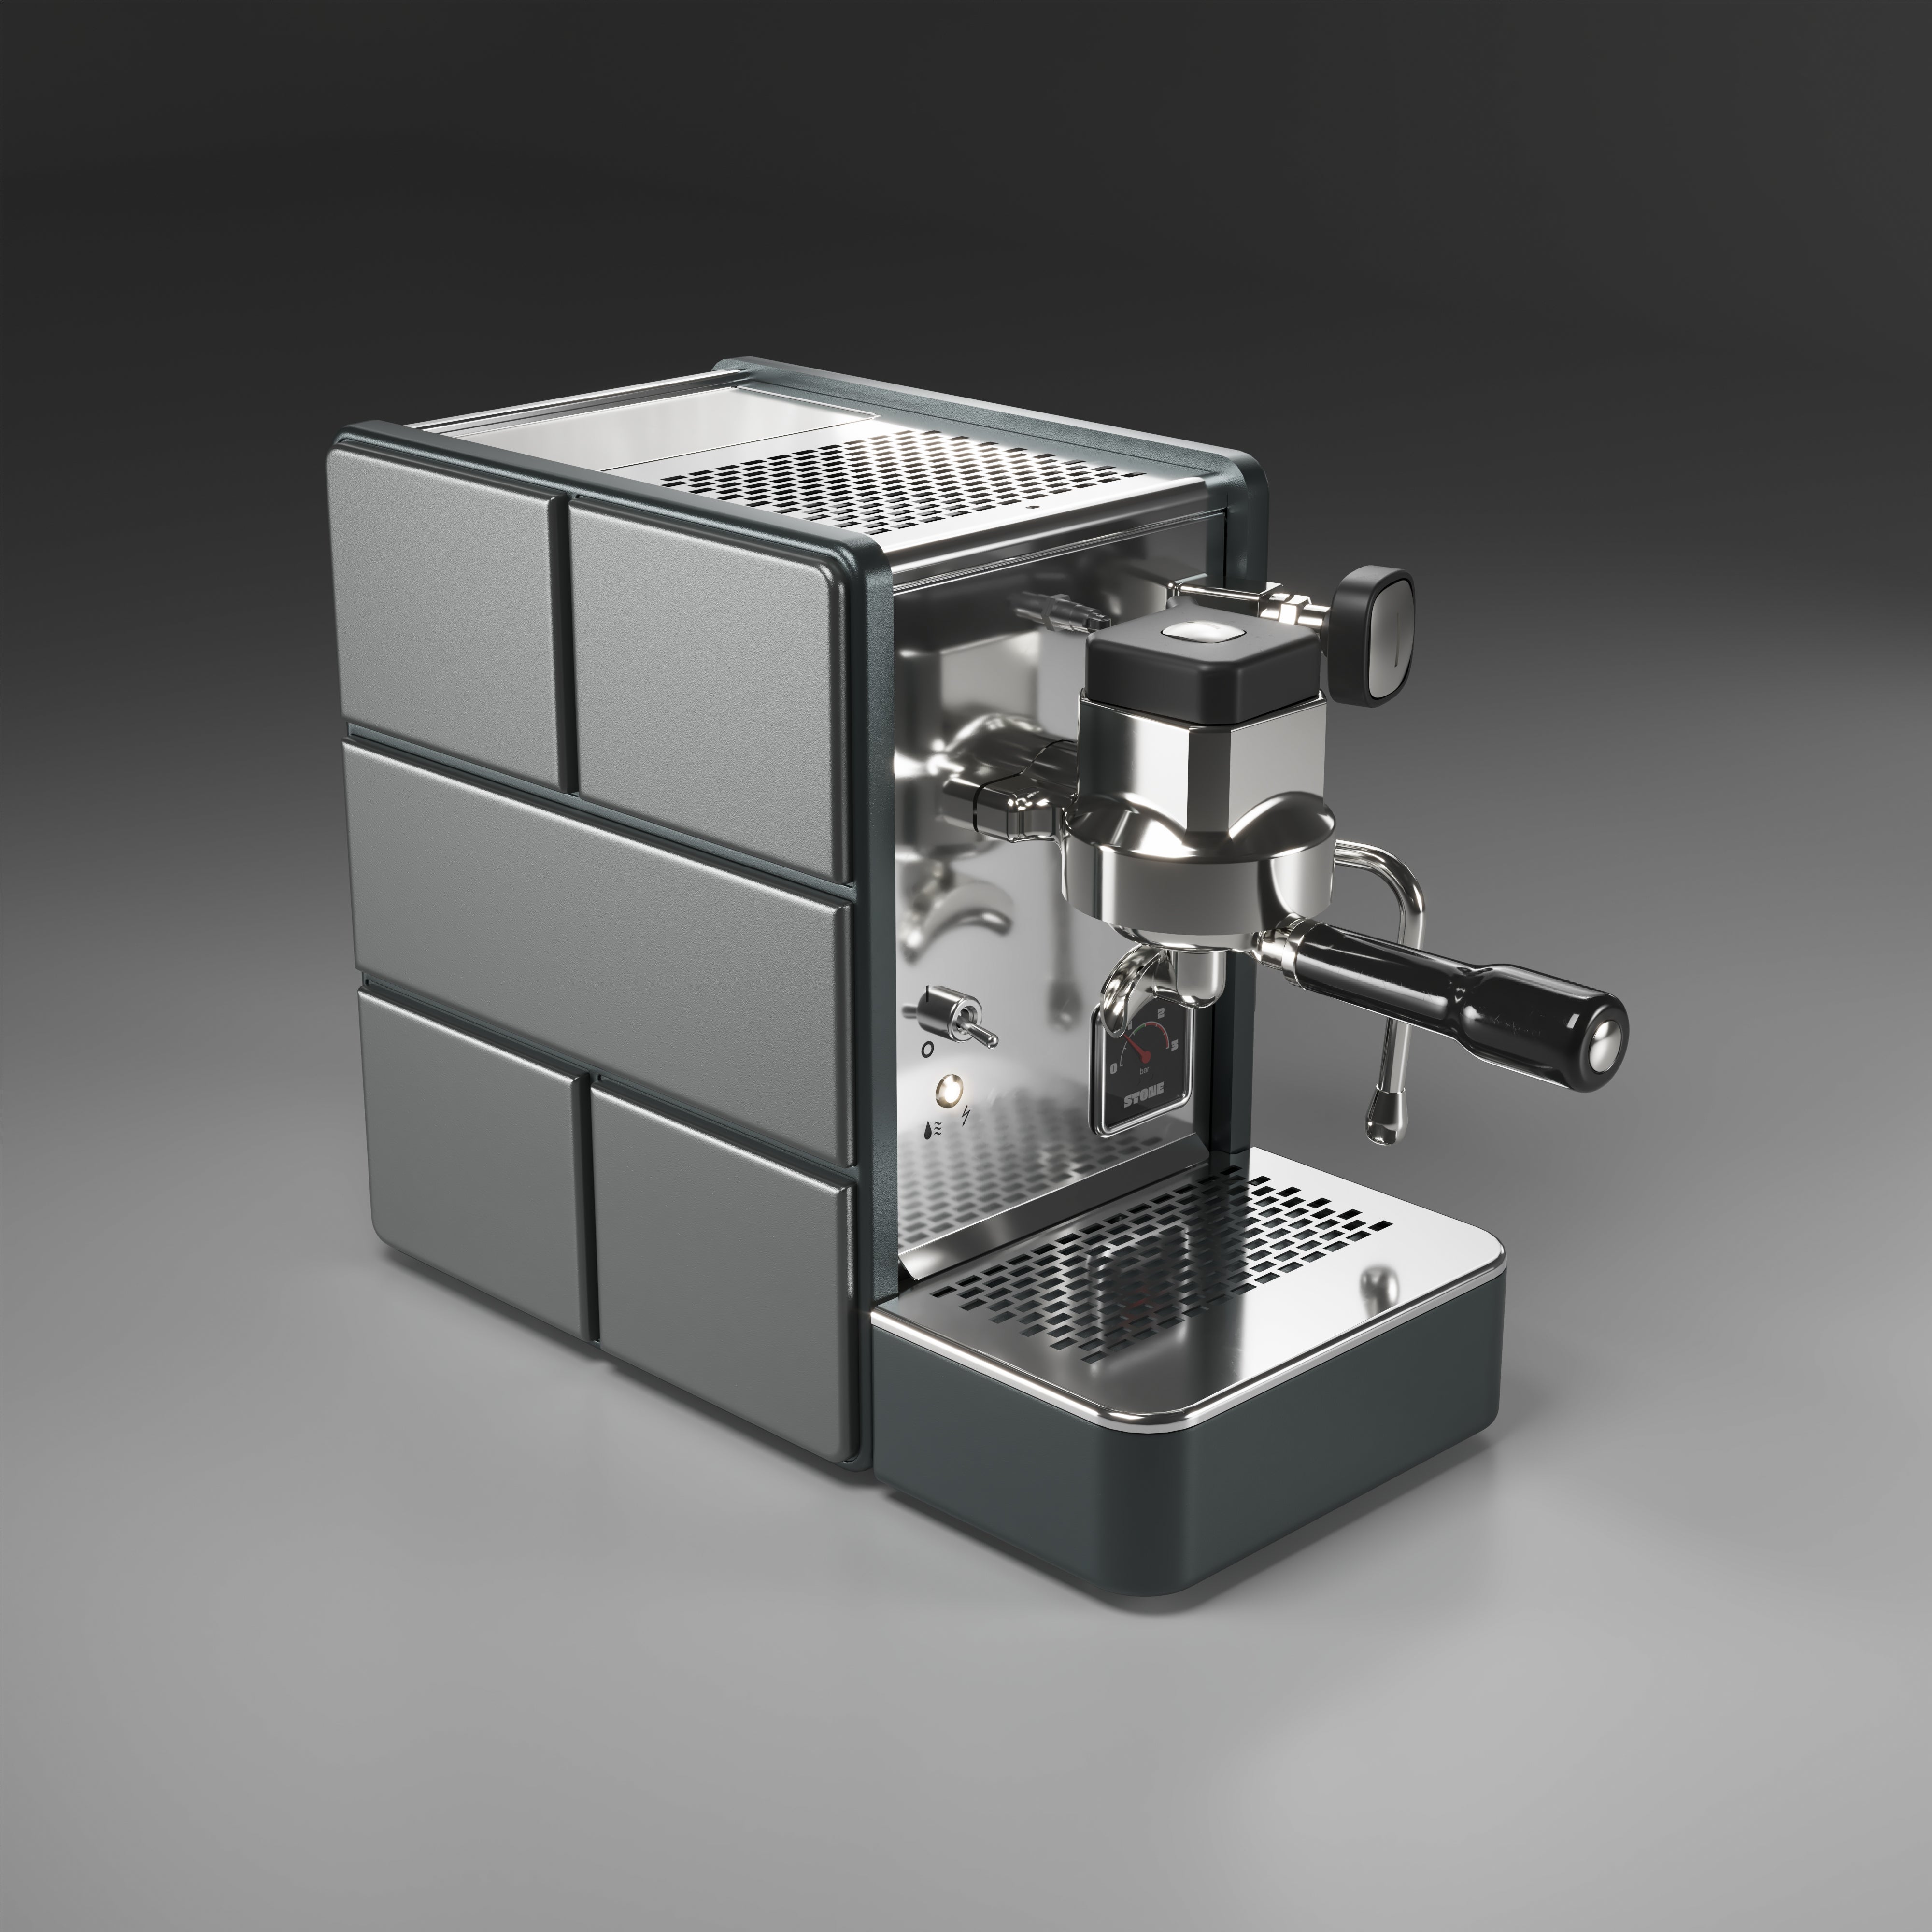 Stone - Espresso Machine - Pure grey